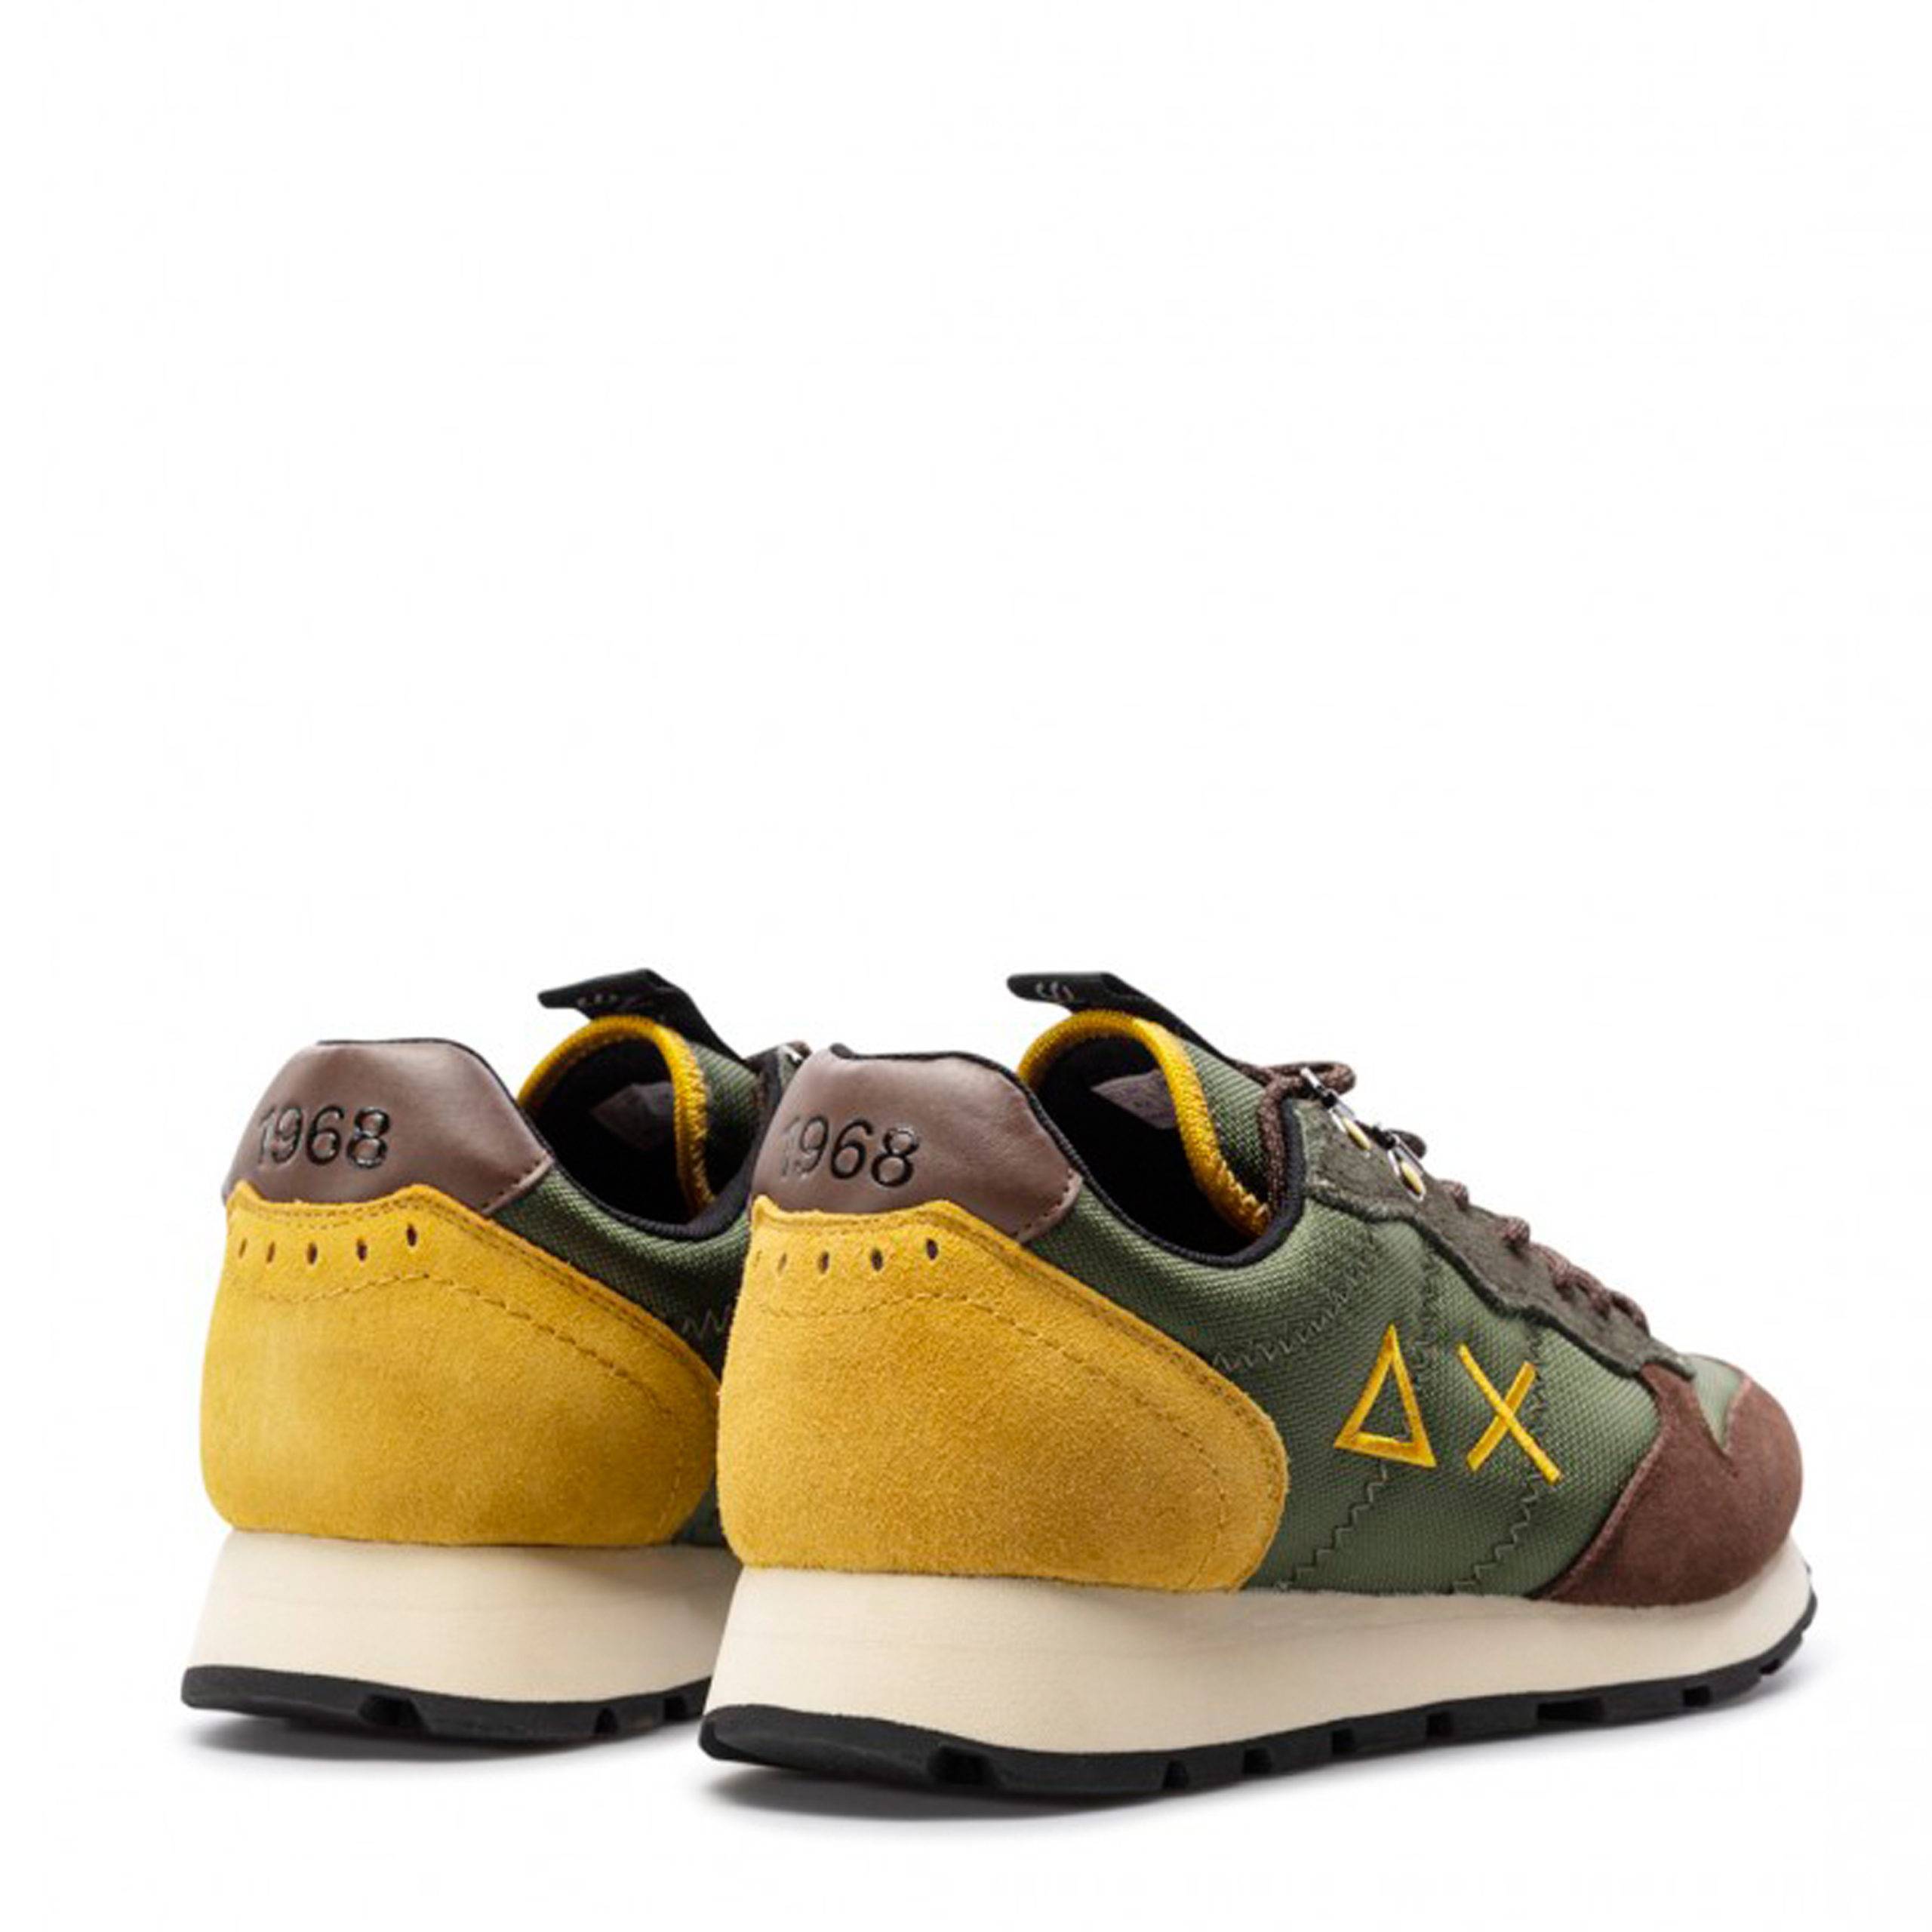 Zapatillas de hombre de la marca AX-Sun, modelo Z41108 en color kaki. Elaborada en ante y tela combinando en tonos de verde, marrón y mostaza. Detalle de logo bordado en el lateral. Cierre con cordones y suela de goma en blanco.